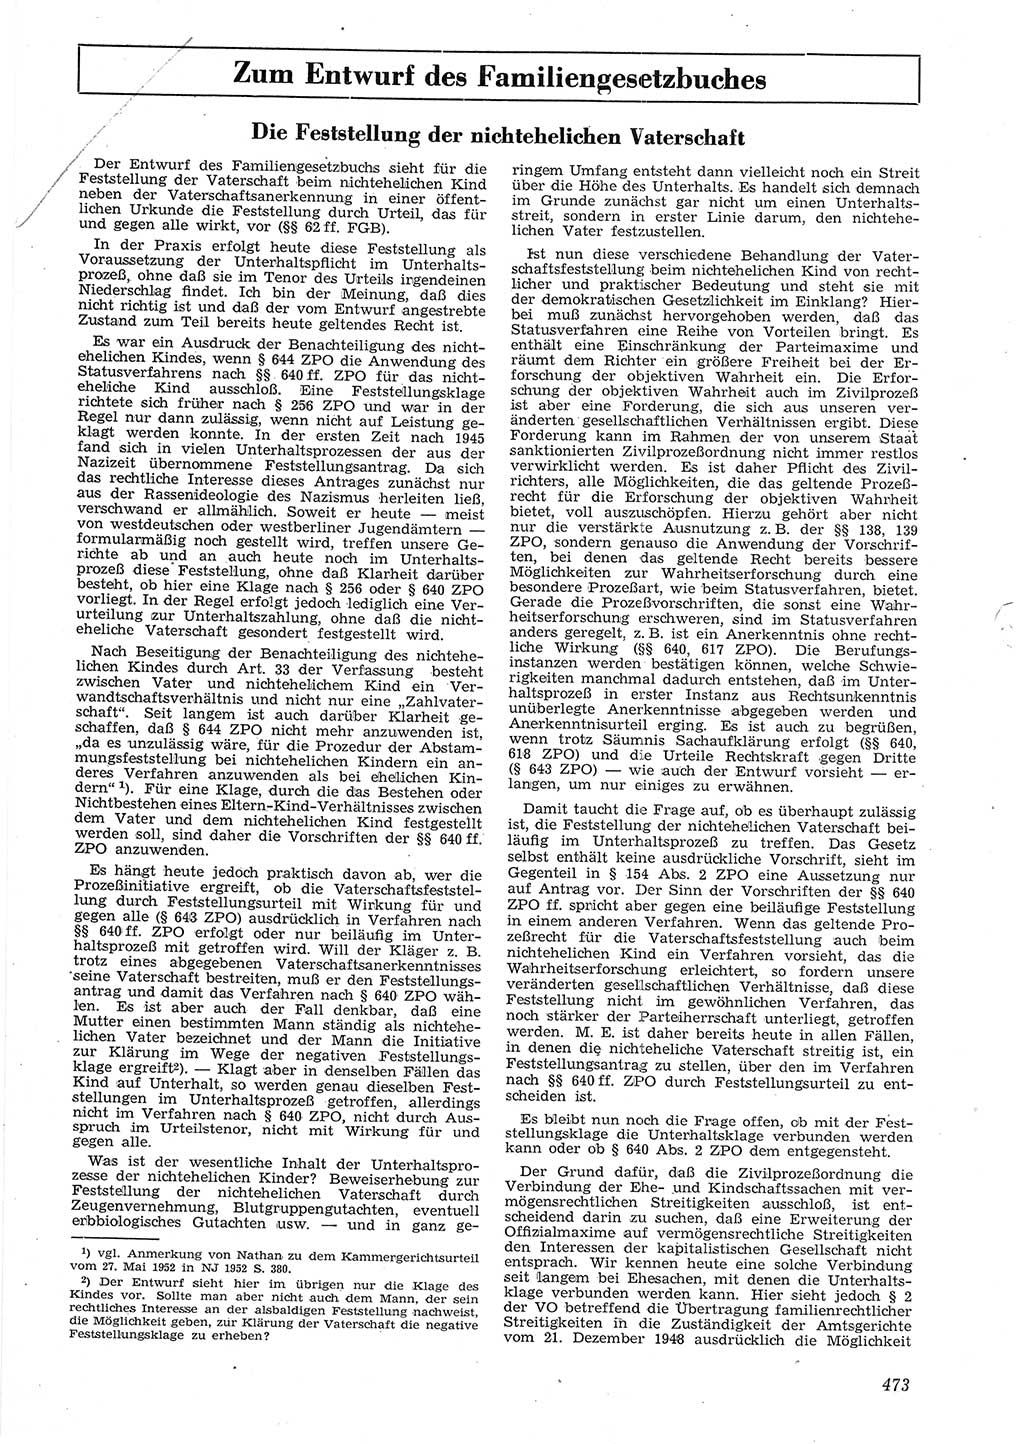 Neue Justiz (NJ), Zeitschrift für Recht und Rechtswissenschaft [Deutsche Demokratische Republik (DDR)], 8. Jahrgang 1954, Seite 473 (NJ DDR 1954, S. 473)